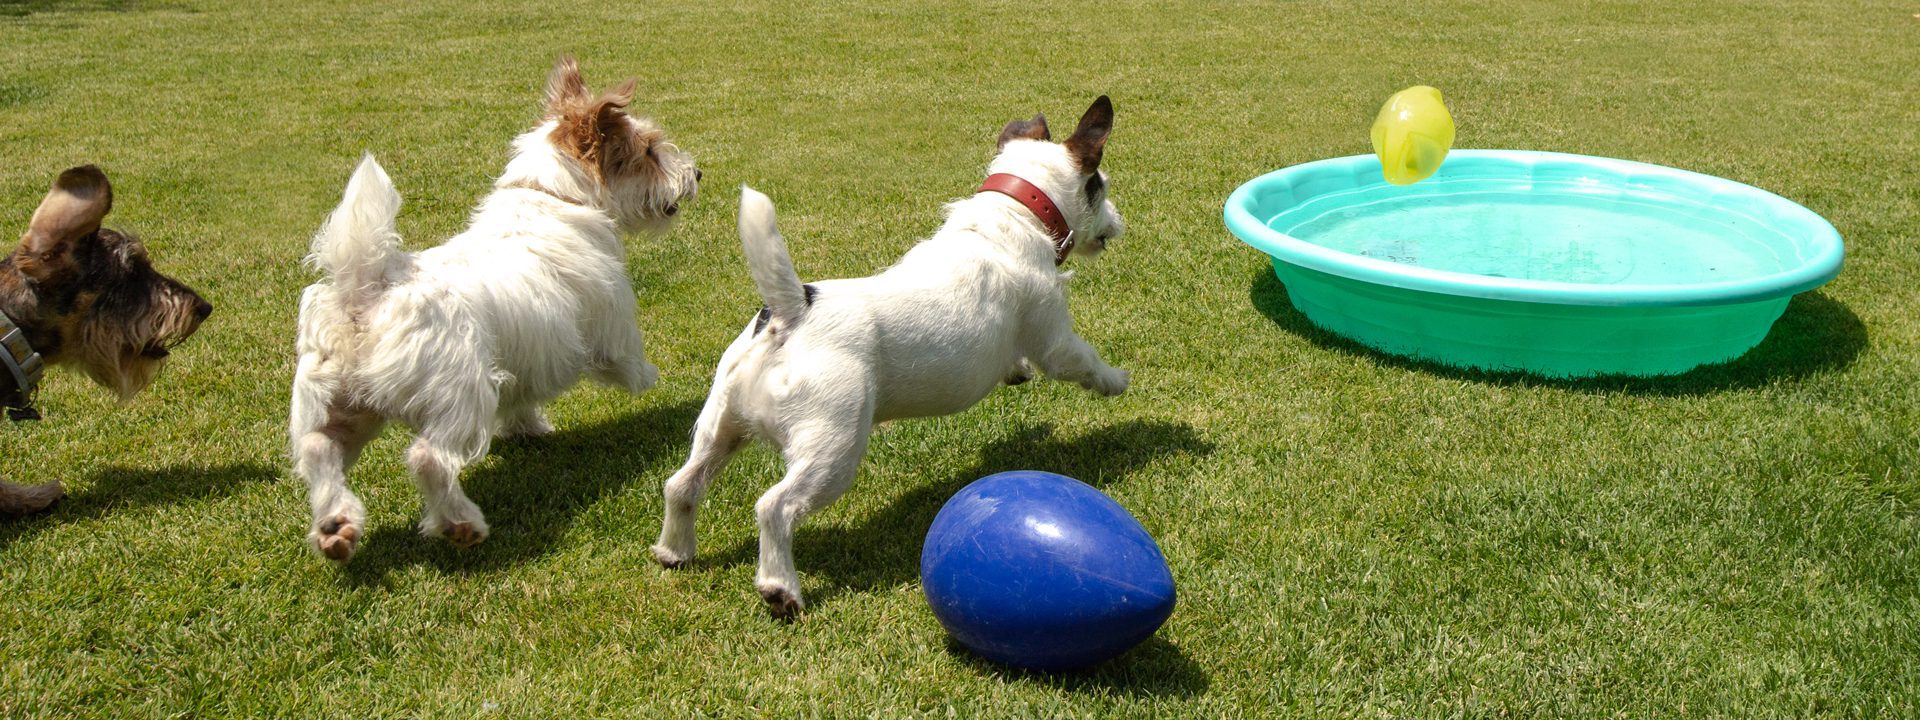 Galeria Dondersteen Resort Foto 4 - Perros jugando en el parque